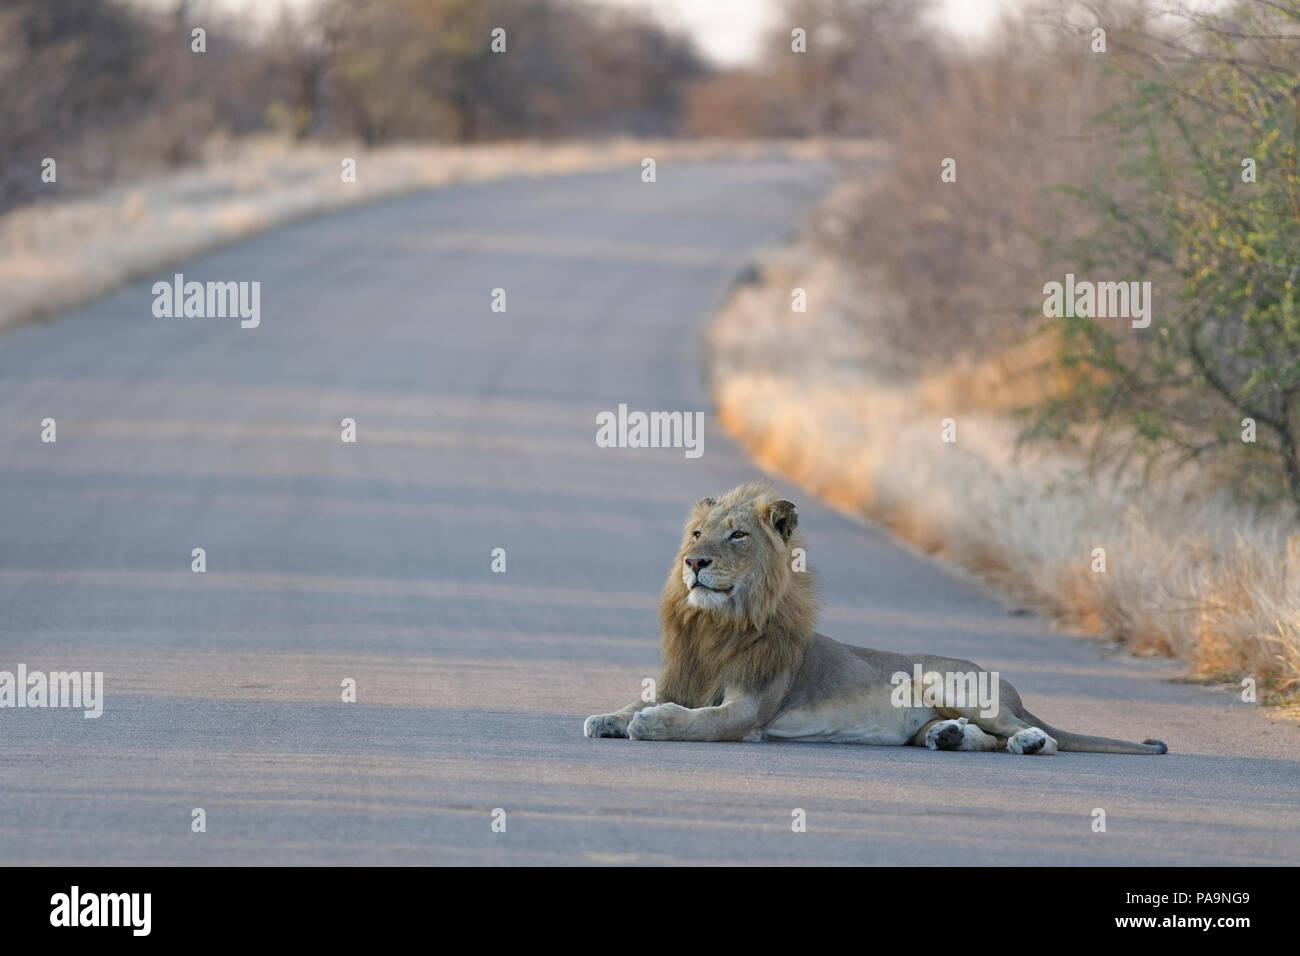 Leone africano (Panthera leo), maschio adulto che giace nel mezzo di una strada asfaltata nella luce della sera, head up, Kruger National Park, Sud Africa e Africa Foto Stock